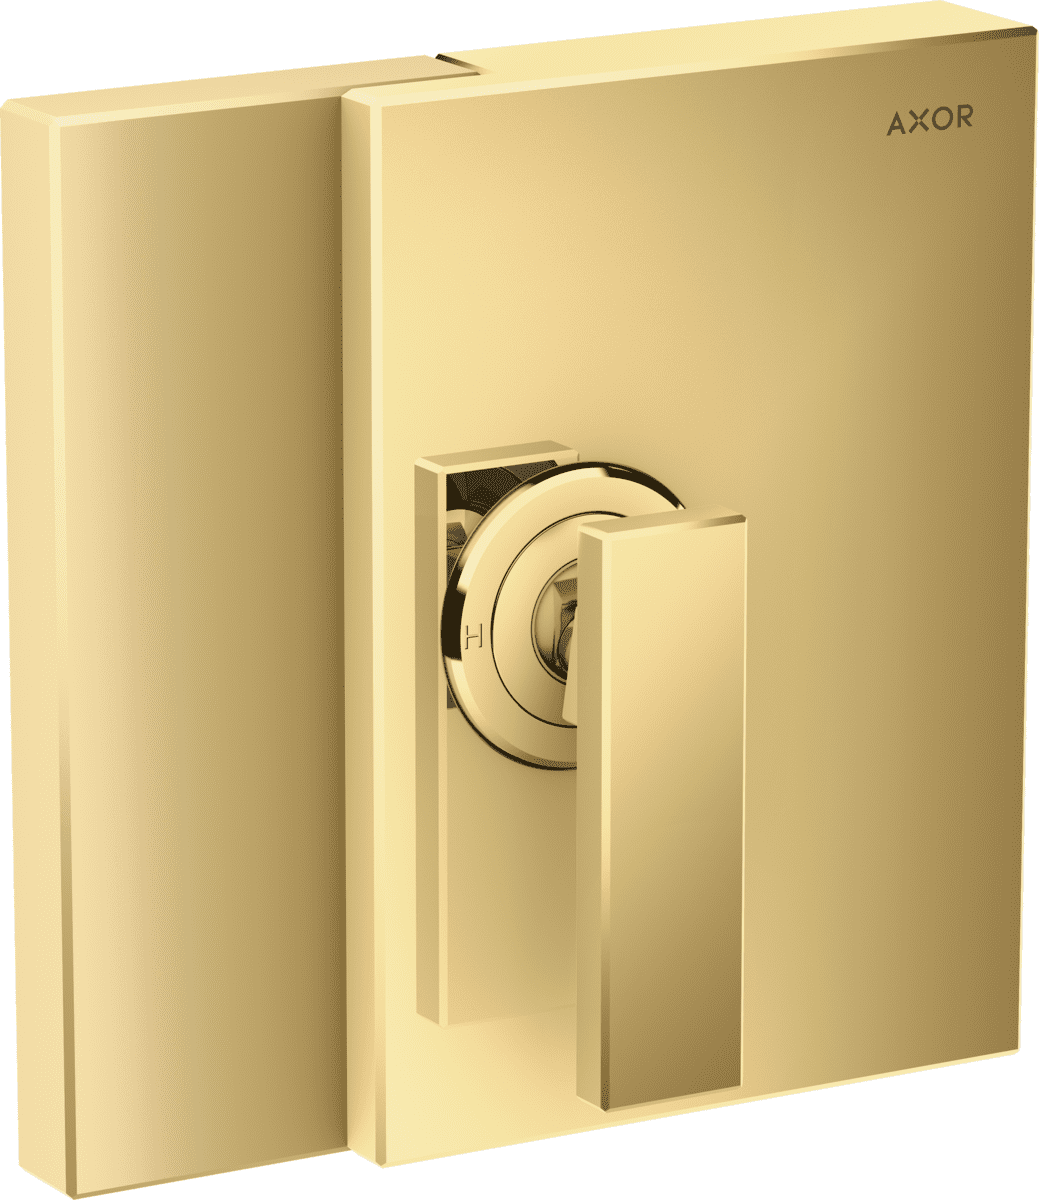 εικόνα του HANSGROHE AXOR Edge Single lever shower mixer for concealed installation #46650990 - Polished Gold Optic